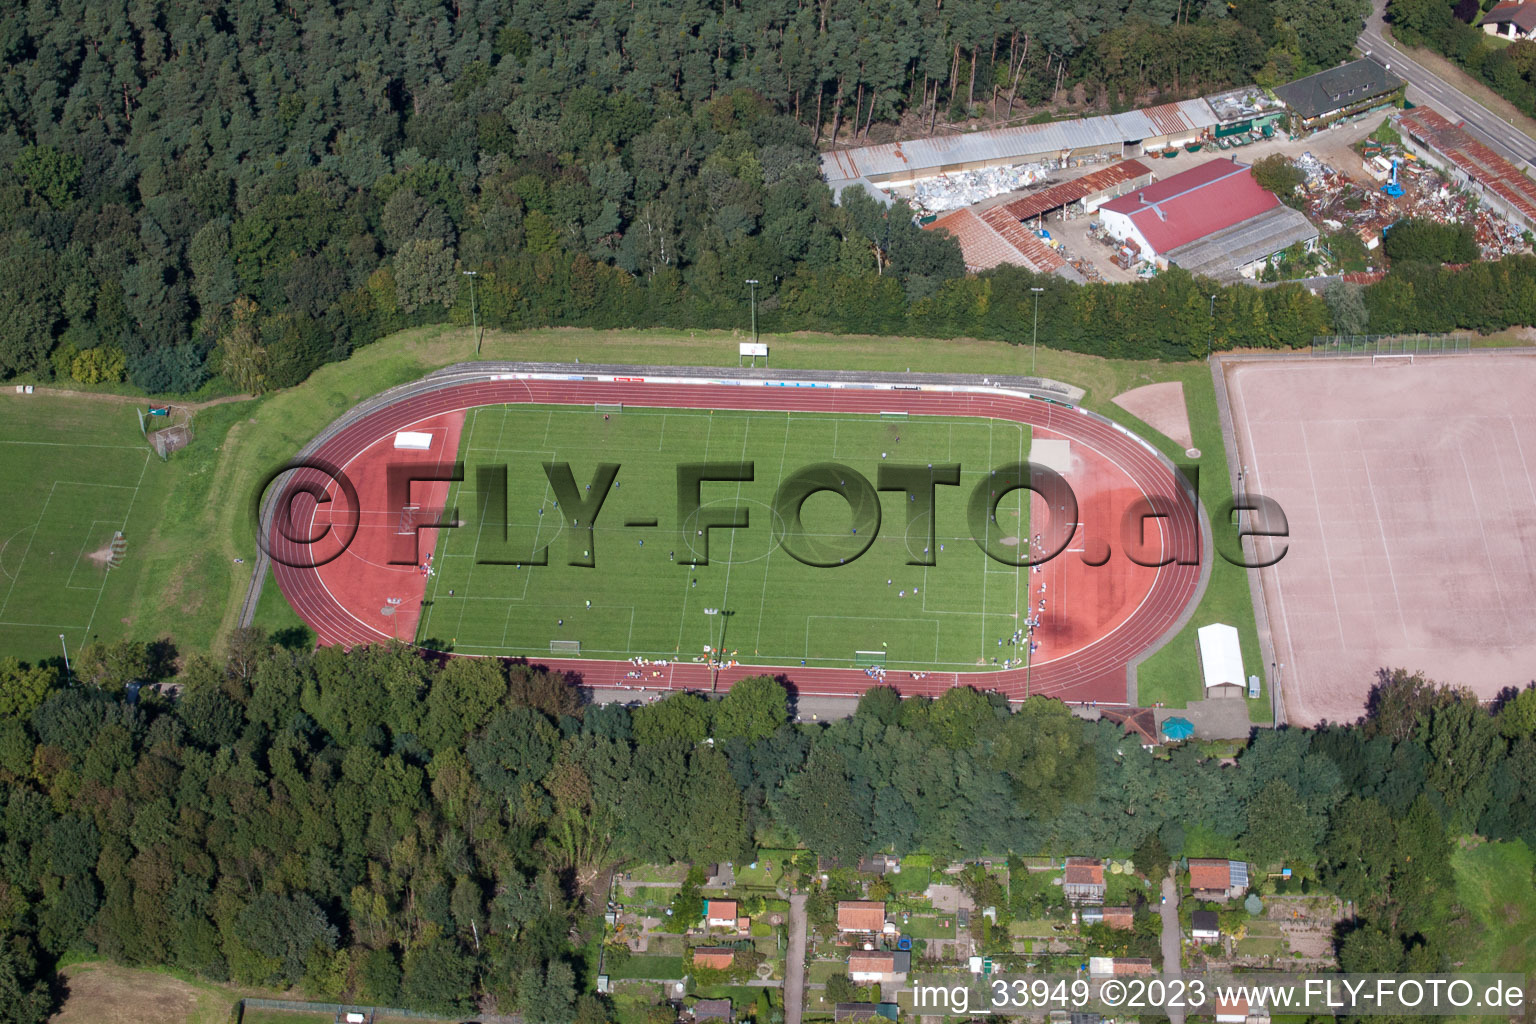 Vue aérienne de Terrain de sport à Bellheim dans le département Rhénanie-Palatinat, Allemagne